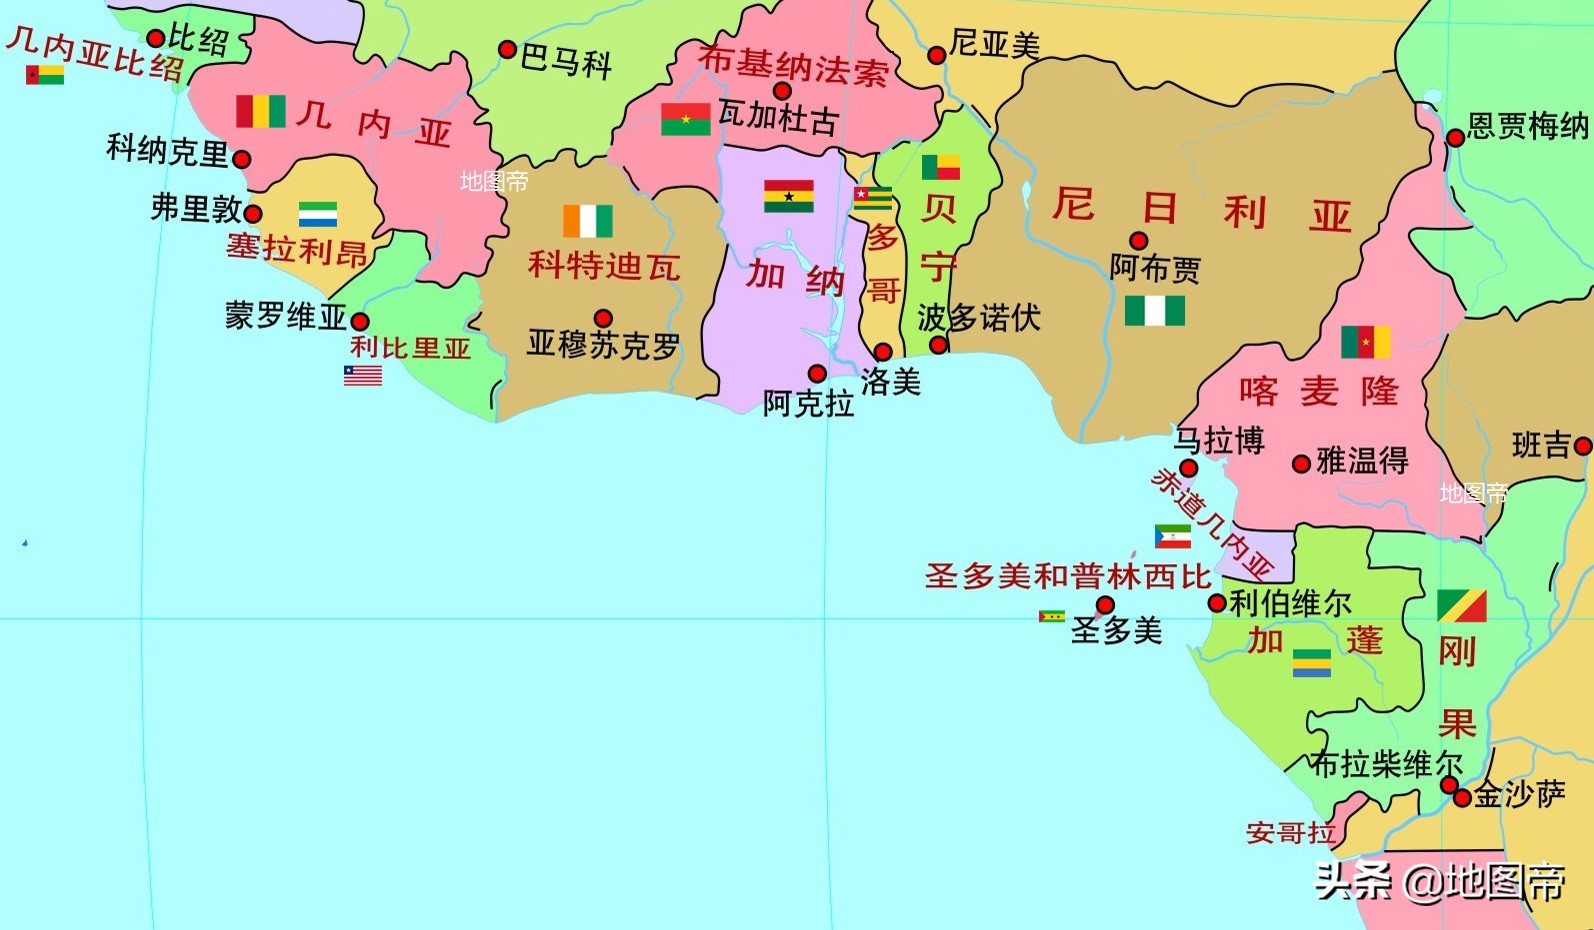 两名中国公民在加纳遭抢劫身亡 1人受伤